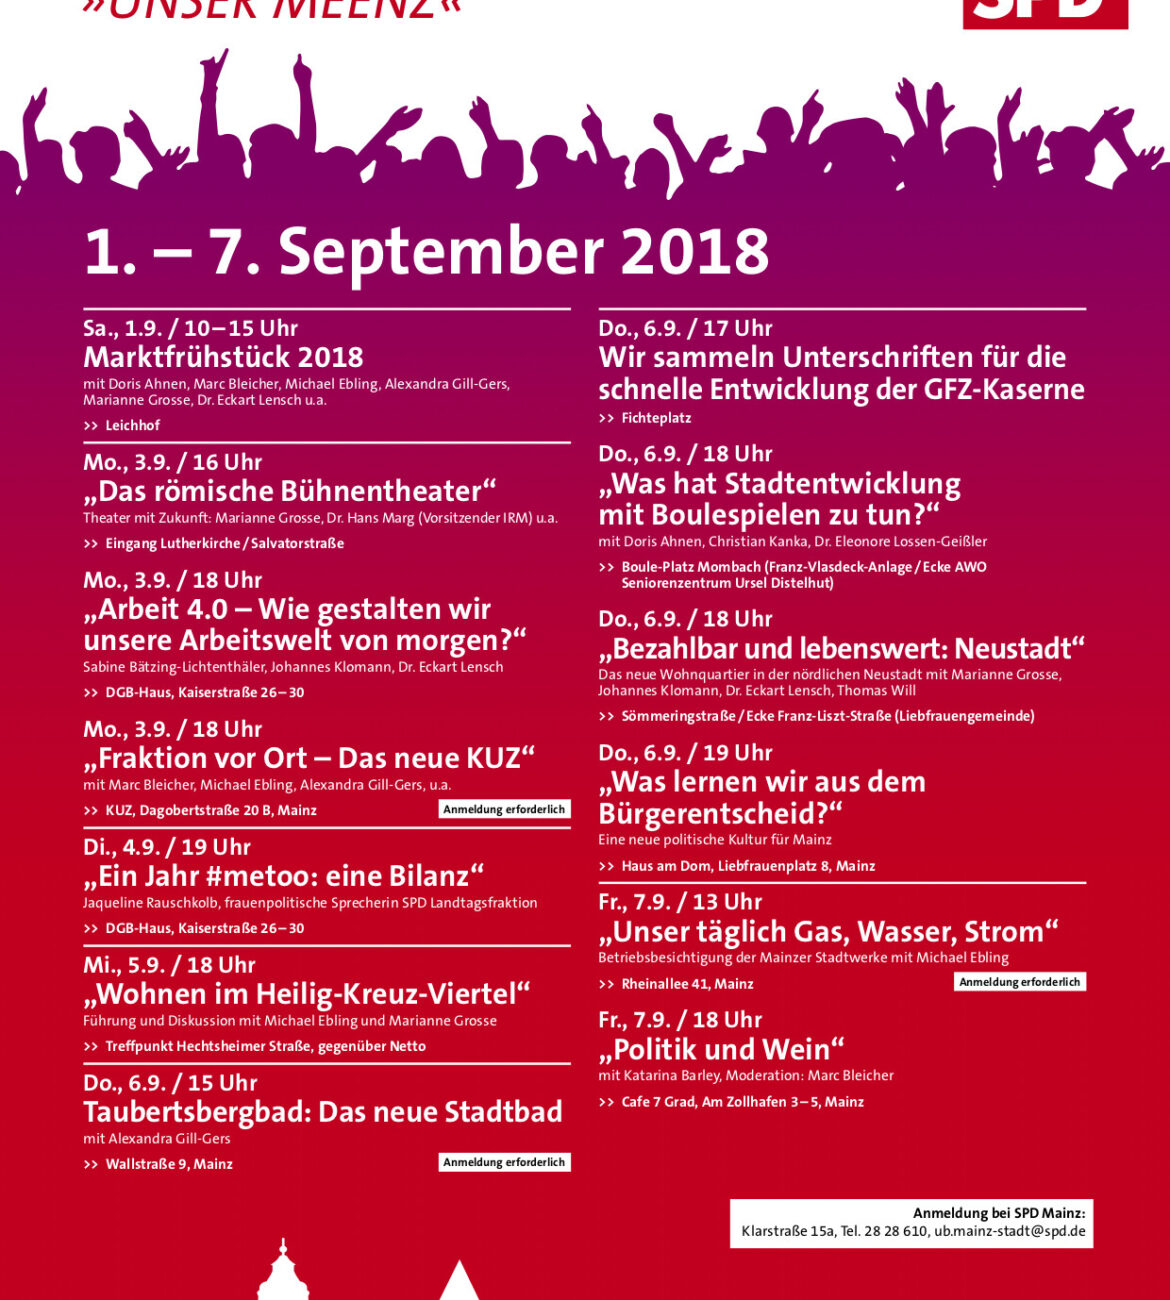 Woche der Mainzer SPD 2018